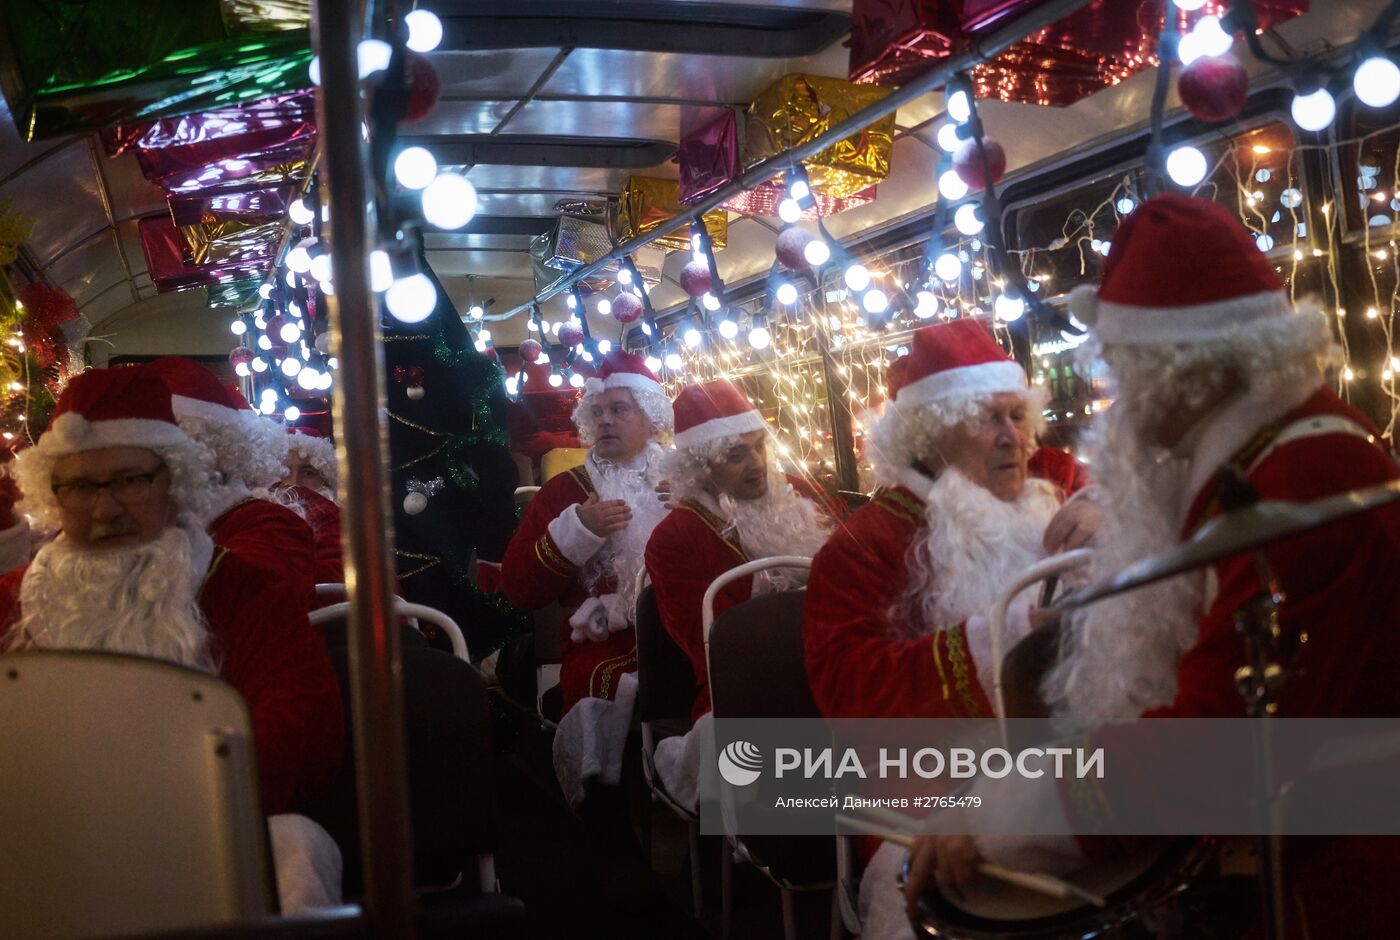 Новогодний автобус с Дедами Морозами в Санкт-Петербурге